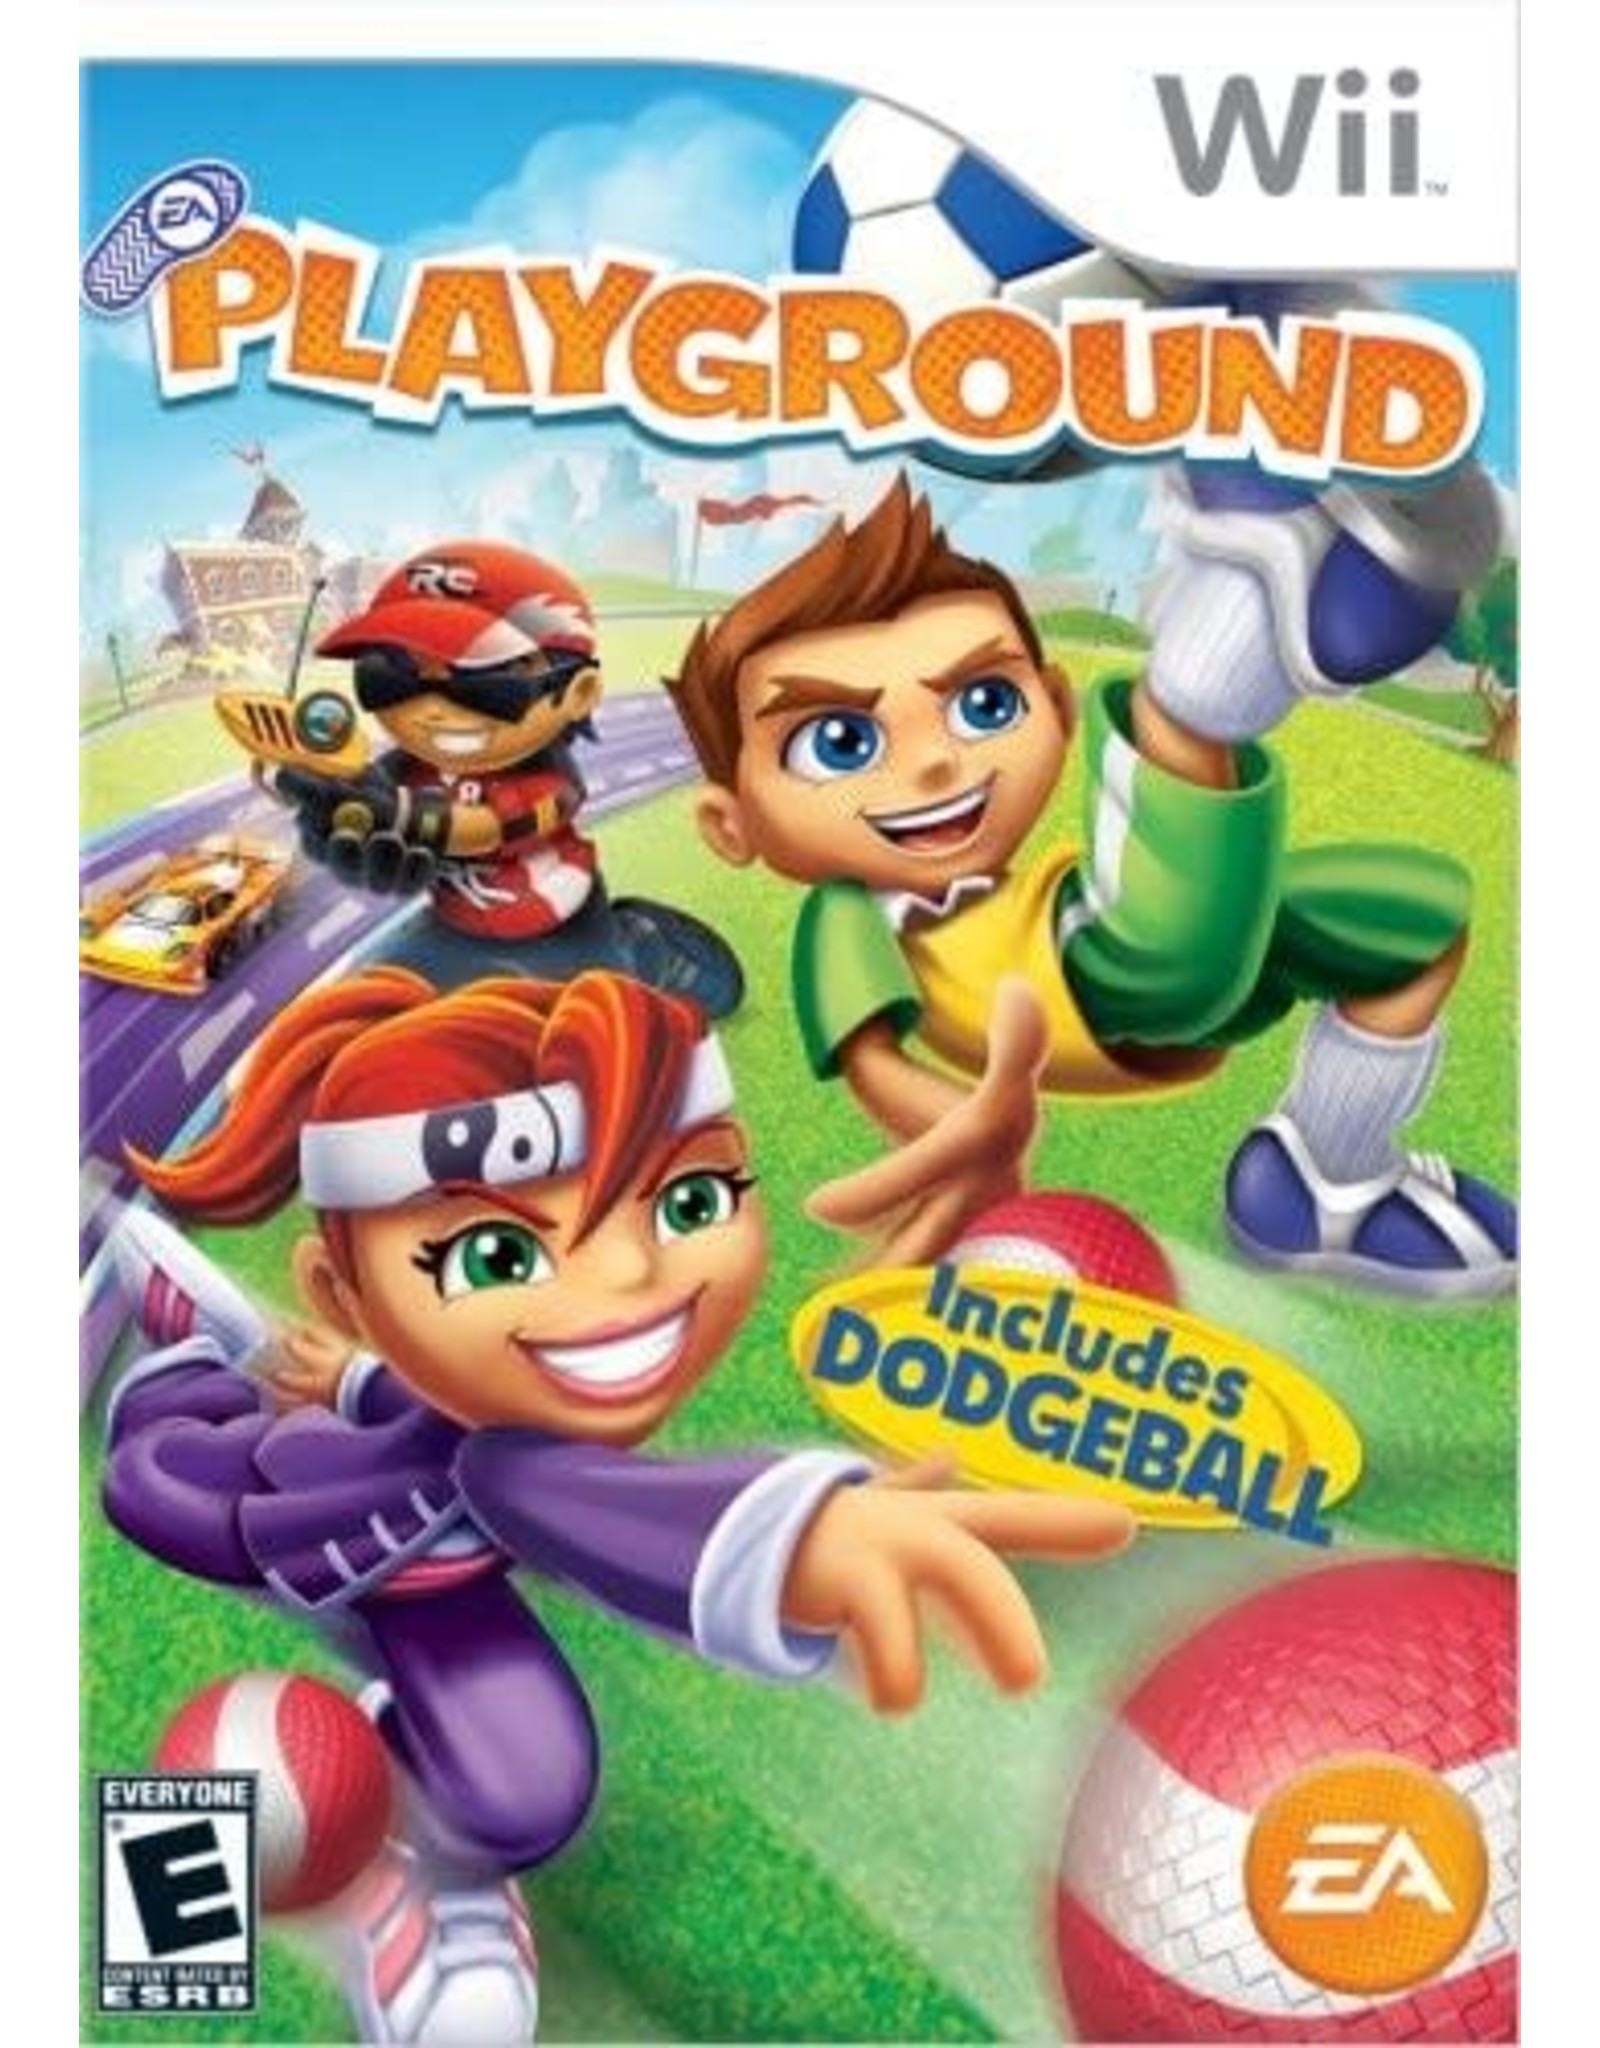 Wii Playground (CiB)